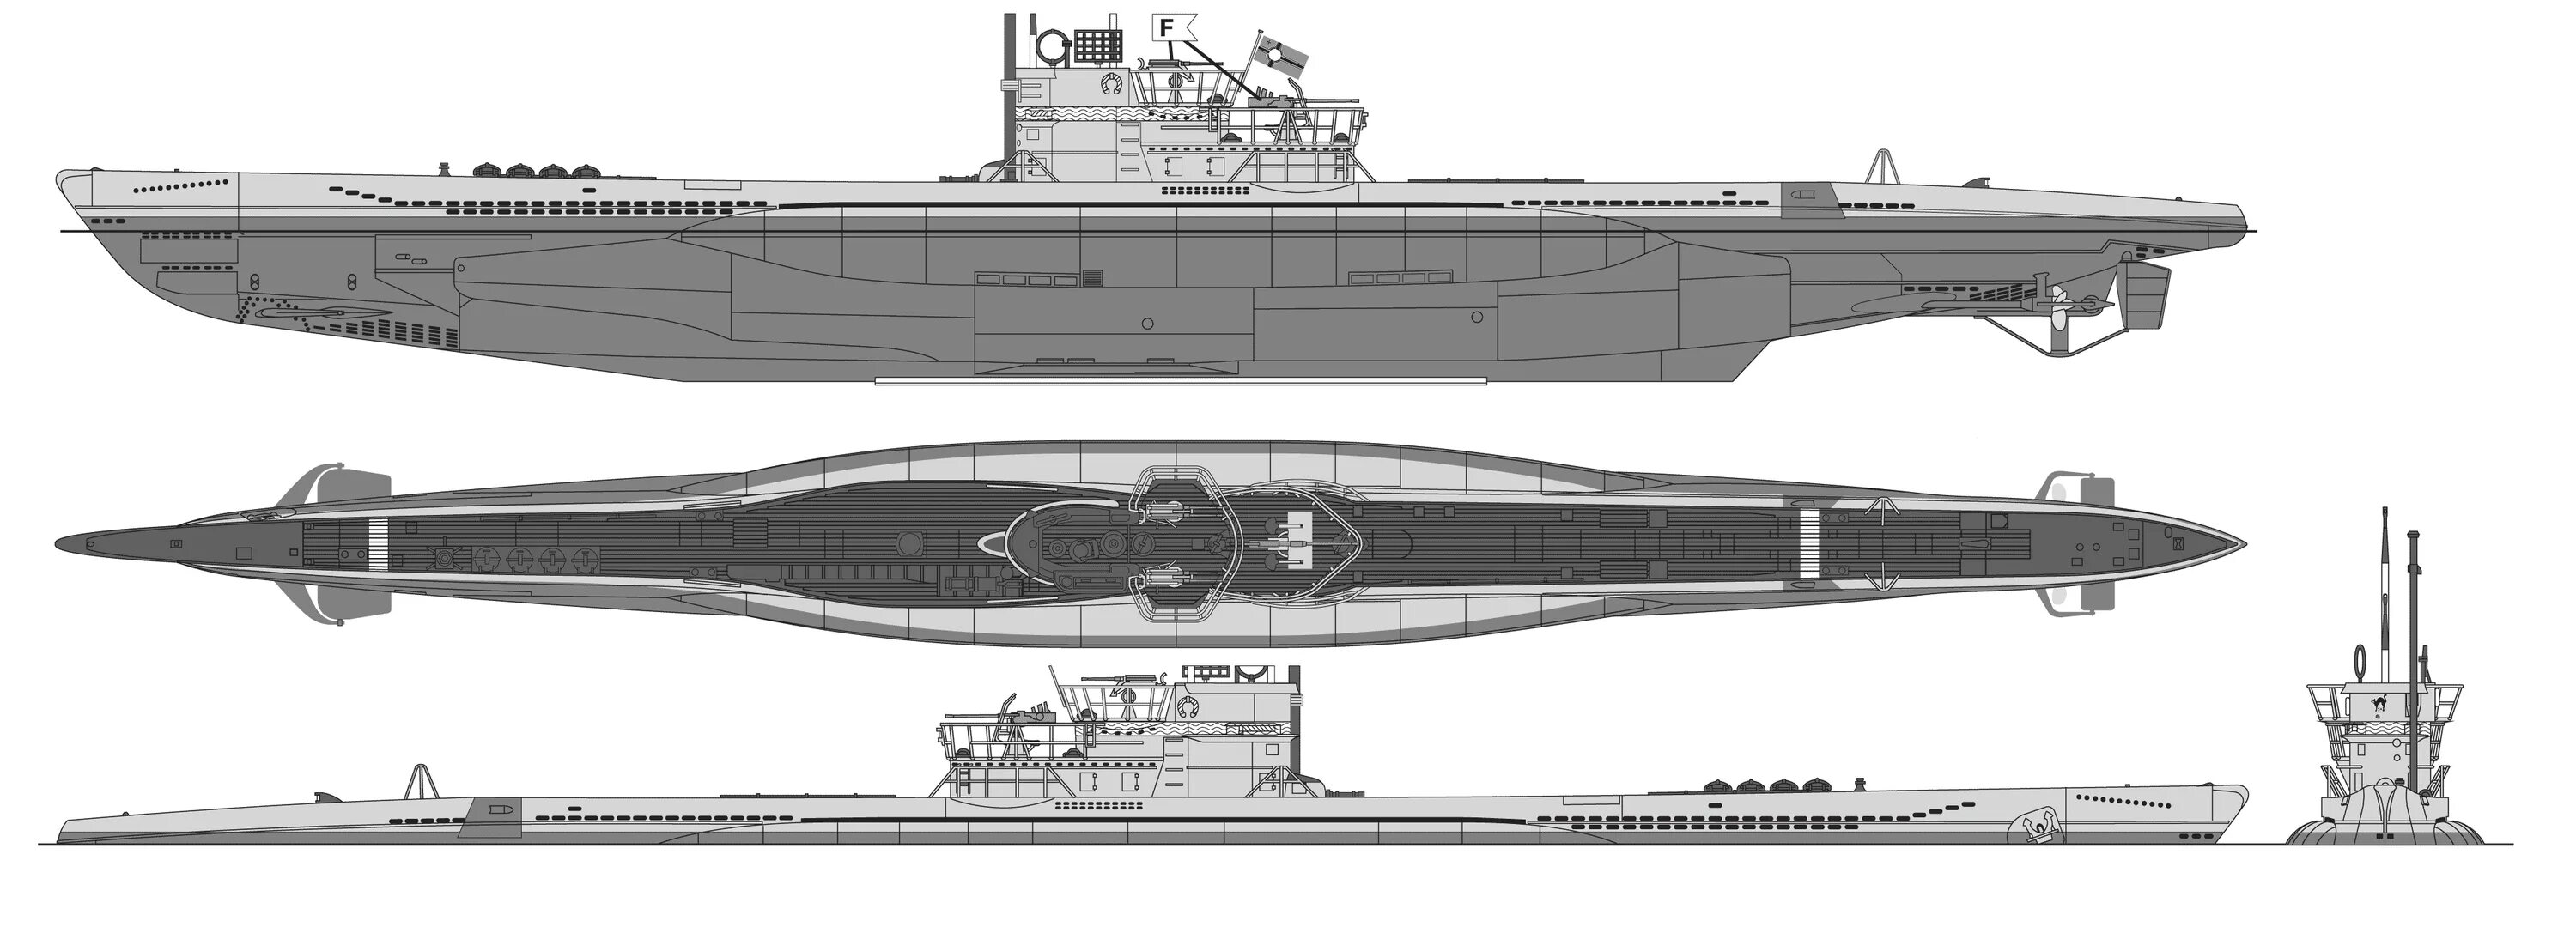 Тип 7 77. Подводная лодка u 571 чертежи. U-47 подводная лодка. U-869 подводные лодки типа IX. Подводные лодки типа VIIC-41.